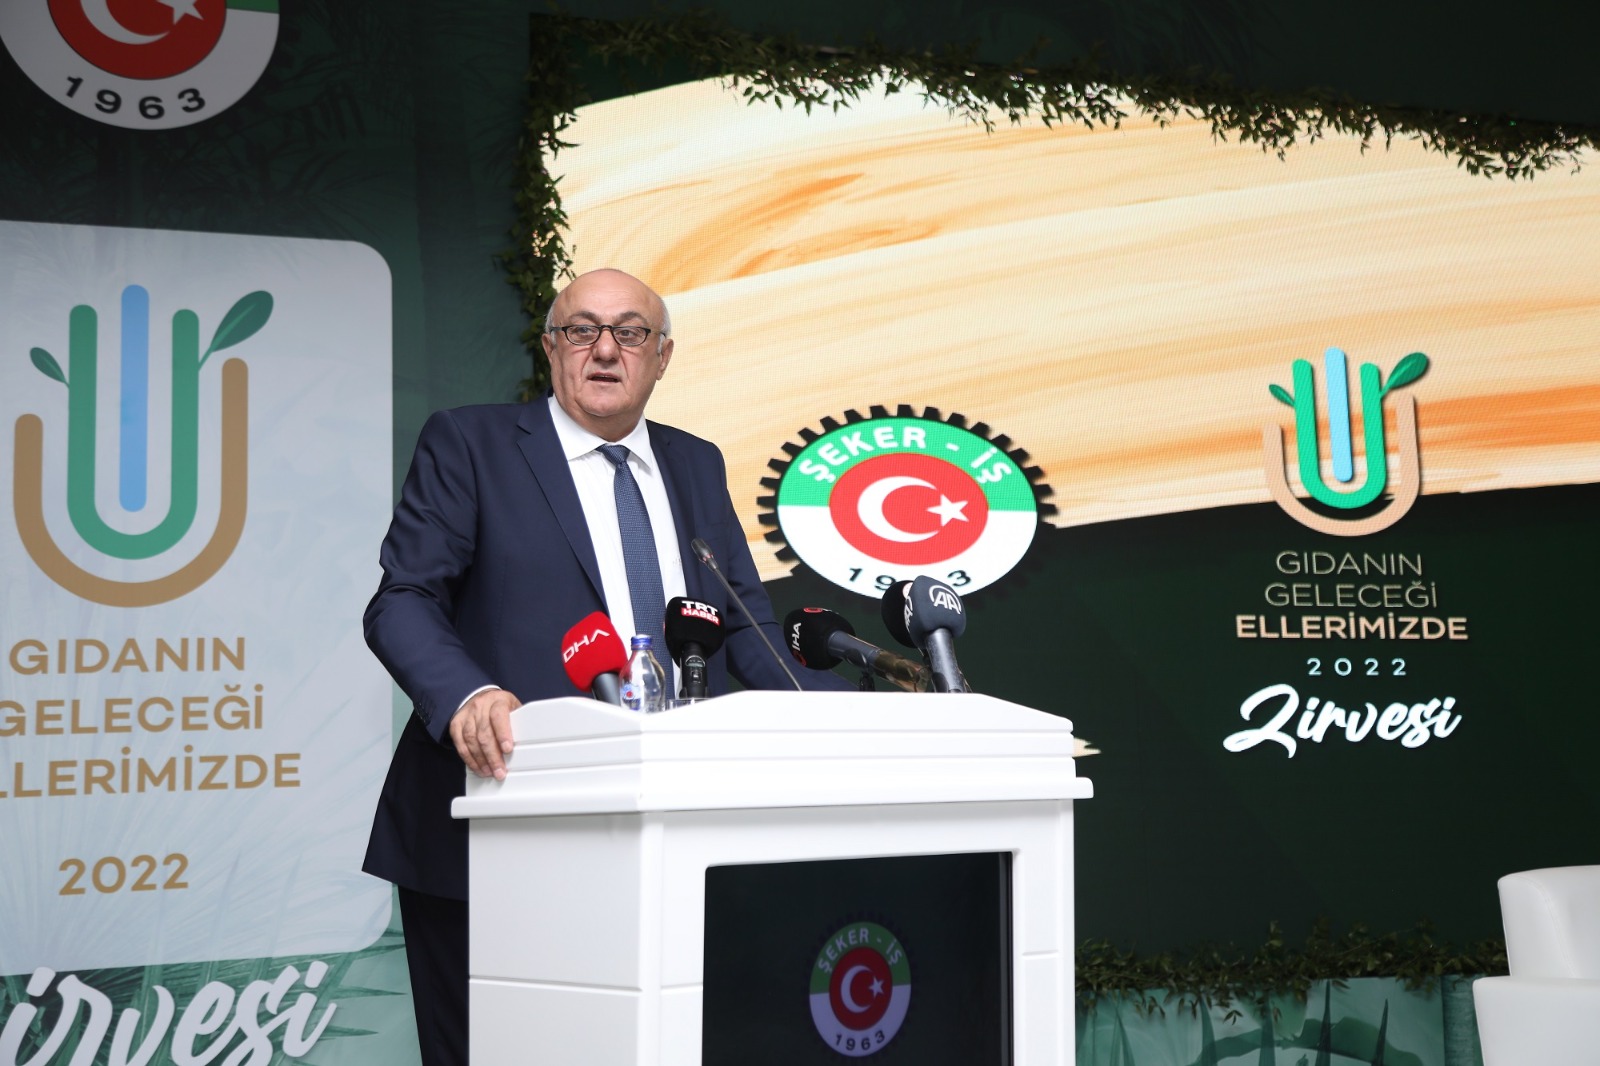 PANKOBİRLİK Genel Başkanı Ramazan Erkoyuncu gıdada suyun önemini vurguladı: